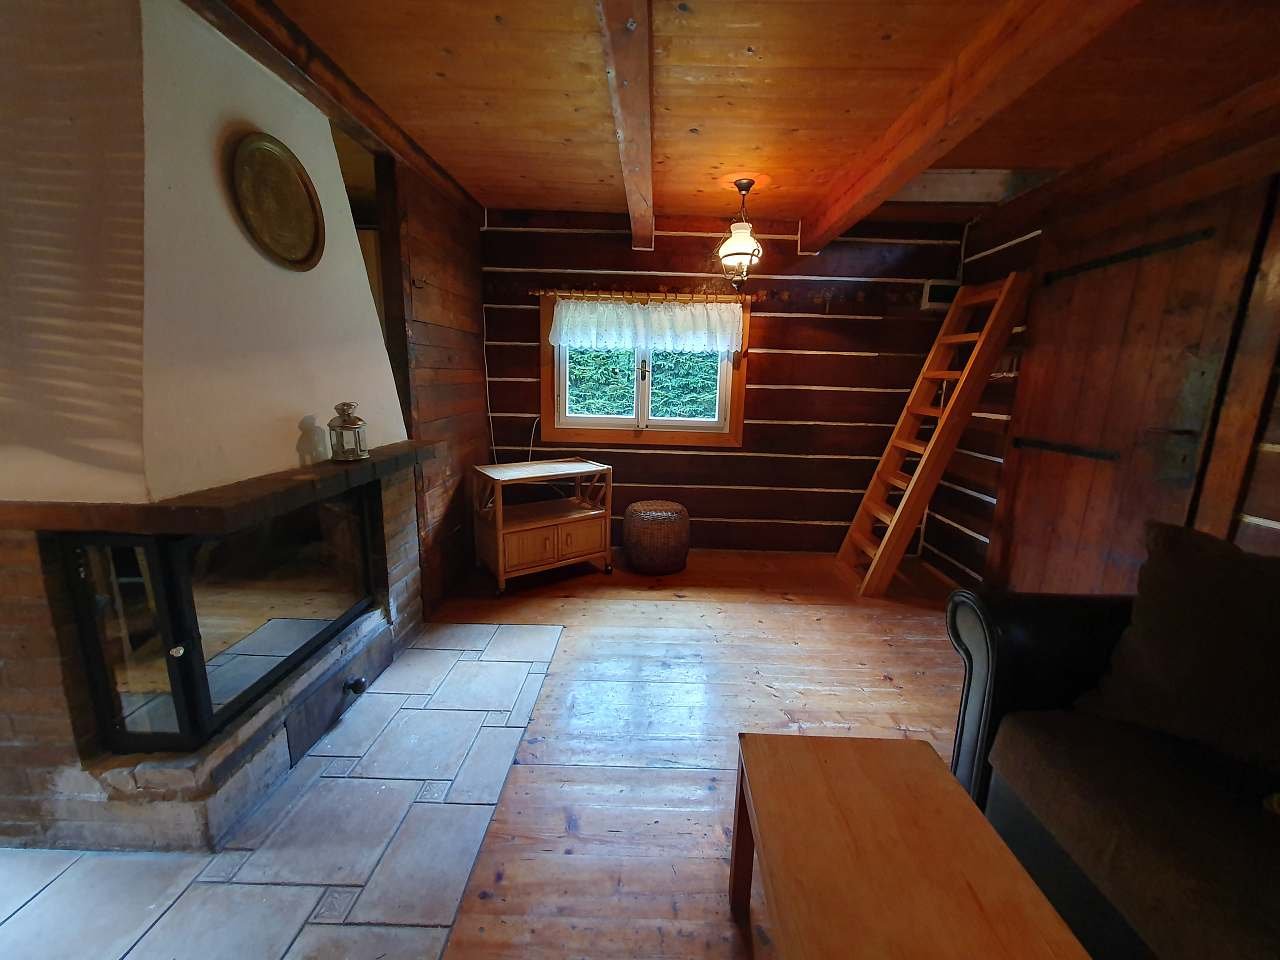 Obývací pokoj s krbem a přístupem do ložnice v podkroví